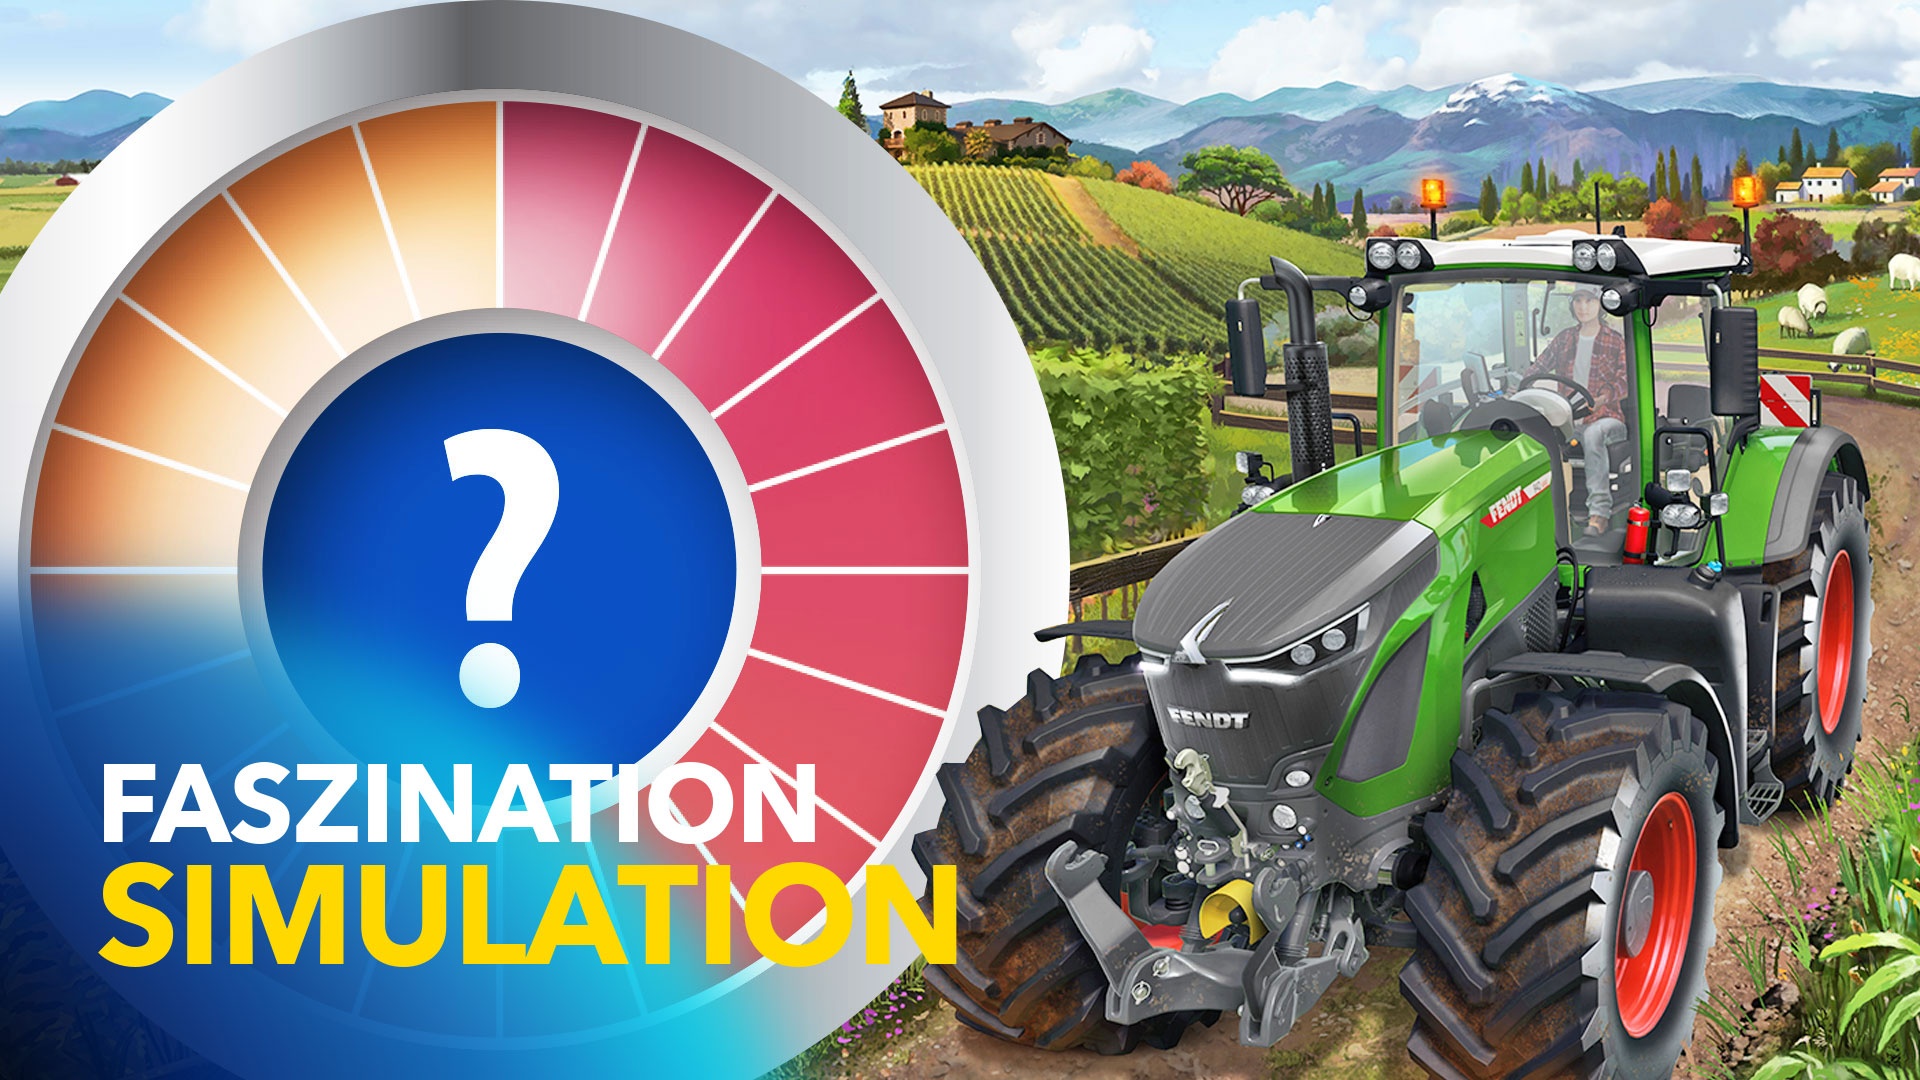 Landwirtschafts-Simulator 22 im Test: Eine gute Ernte für Fans